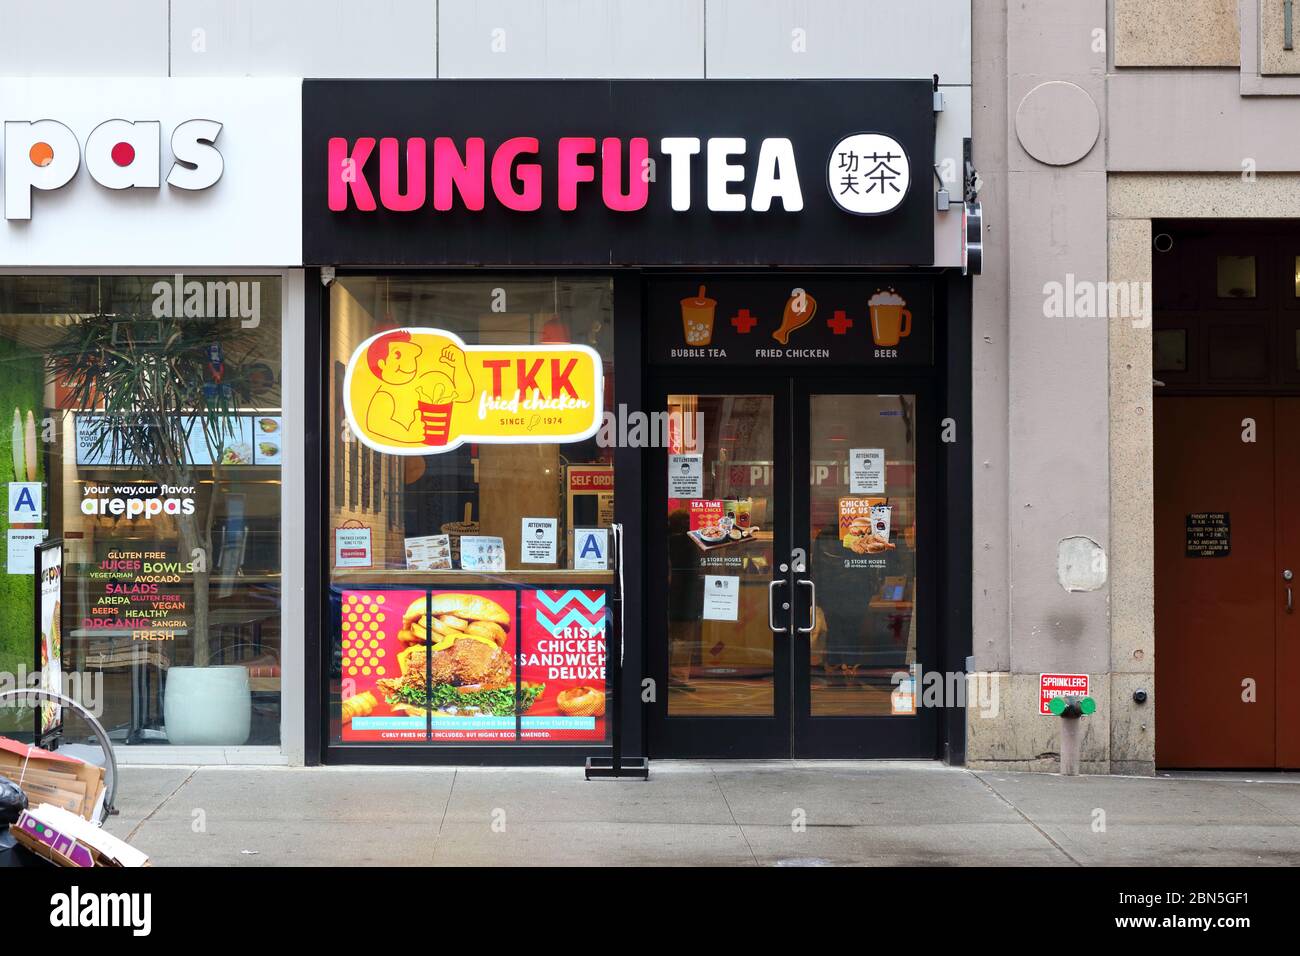 Kung Fu Tea, TKK Fried Chicken, 115 East 23rd St, New York, New York, New York, New York, boutique photo d'une chaîne de thé moussant et d'un restaurant de poulet frit à Manhattan. Banque D'Images